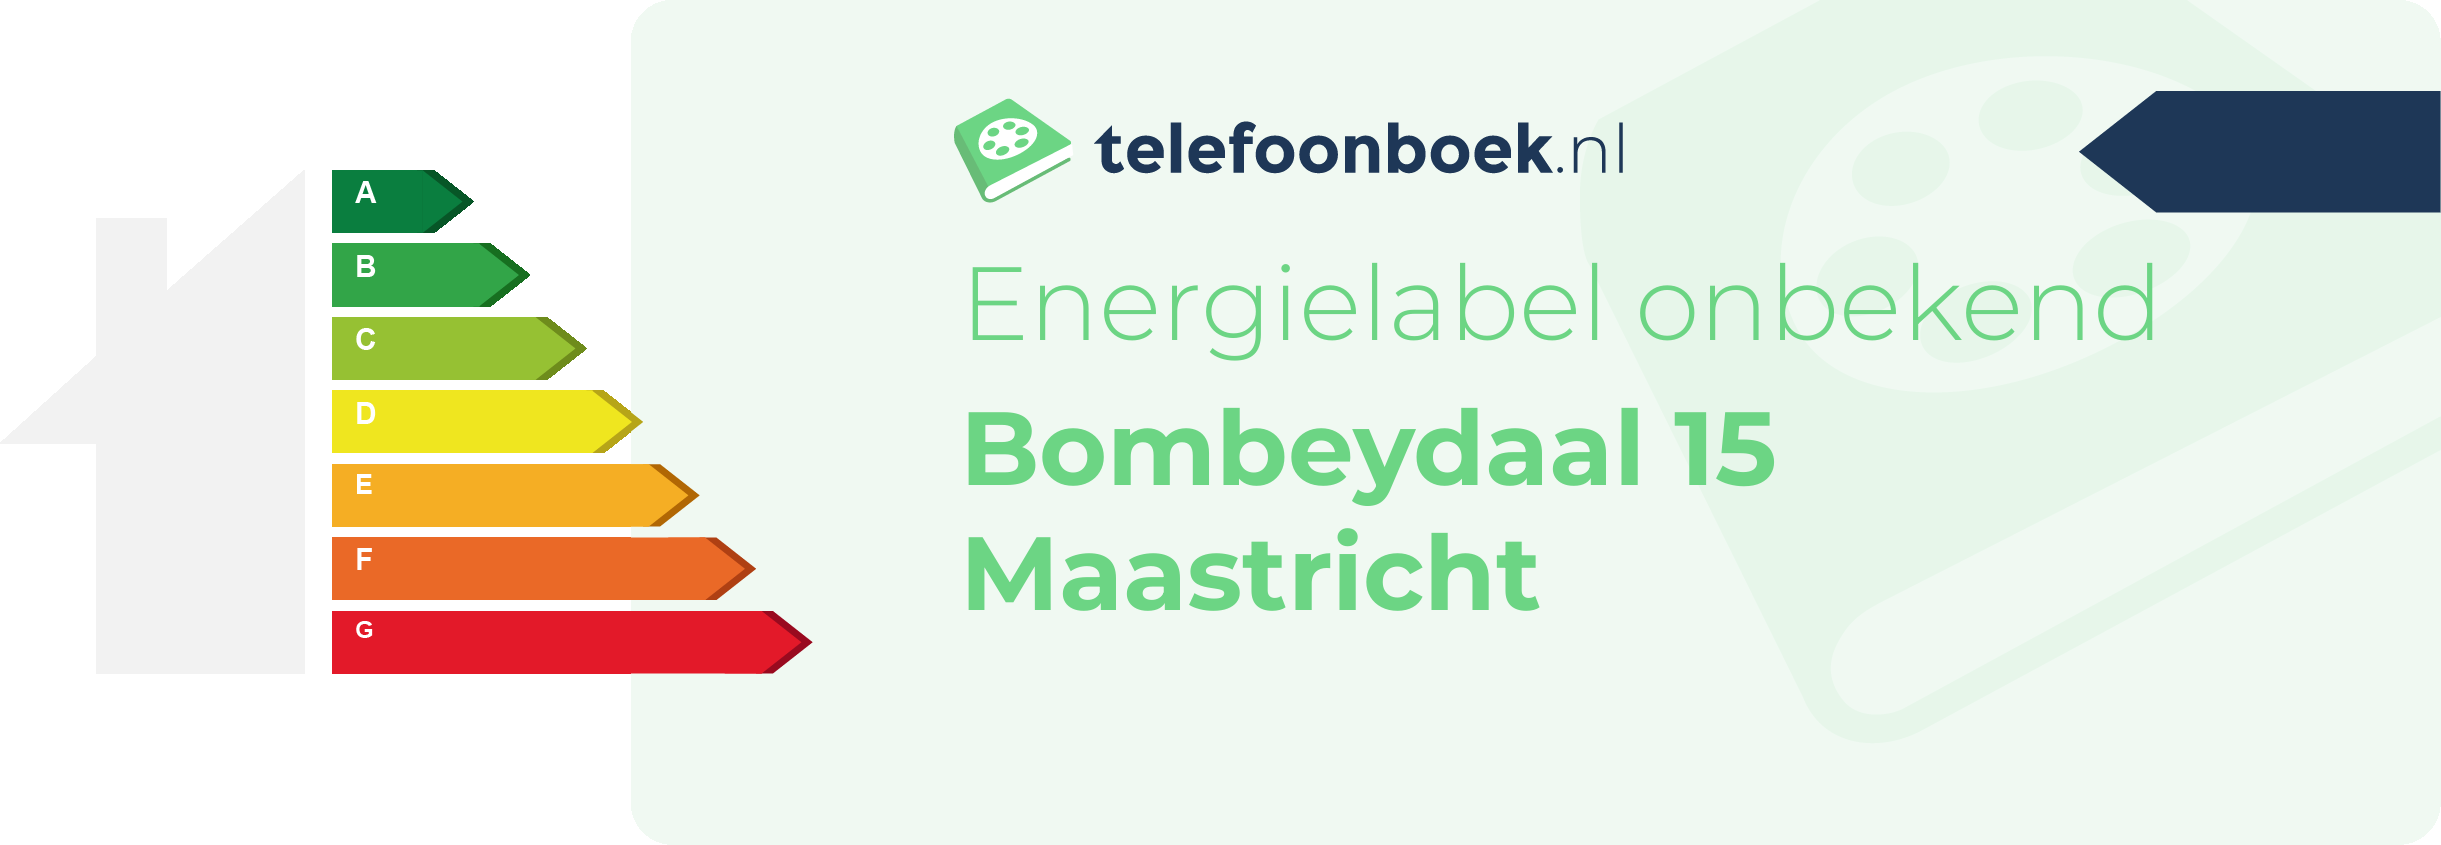 Energielabel Bombeydaal 15 Maastricht